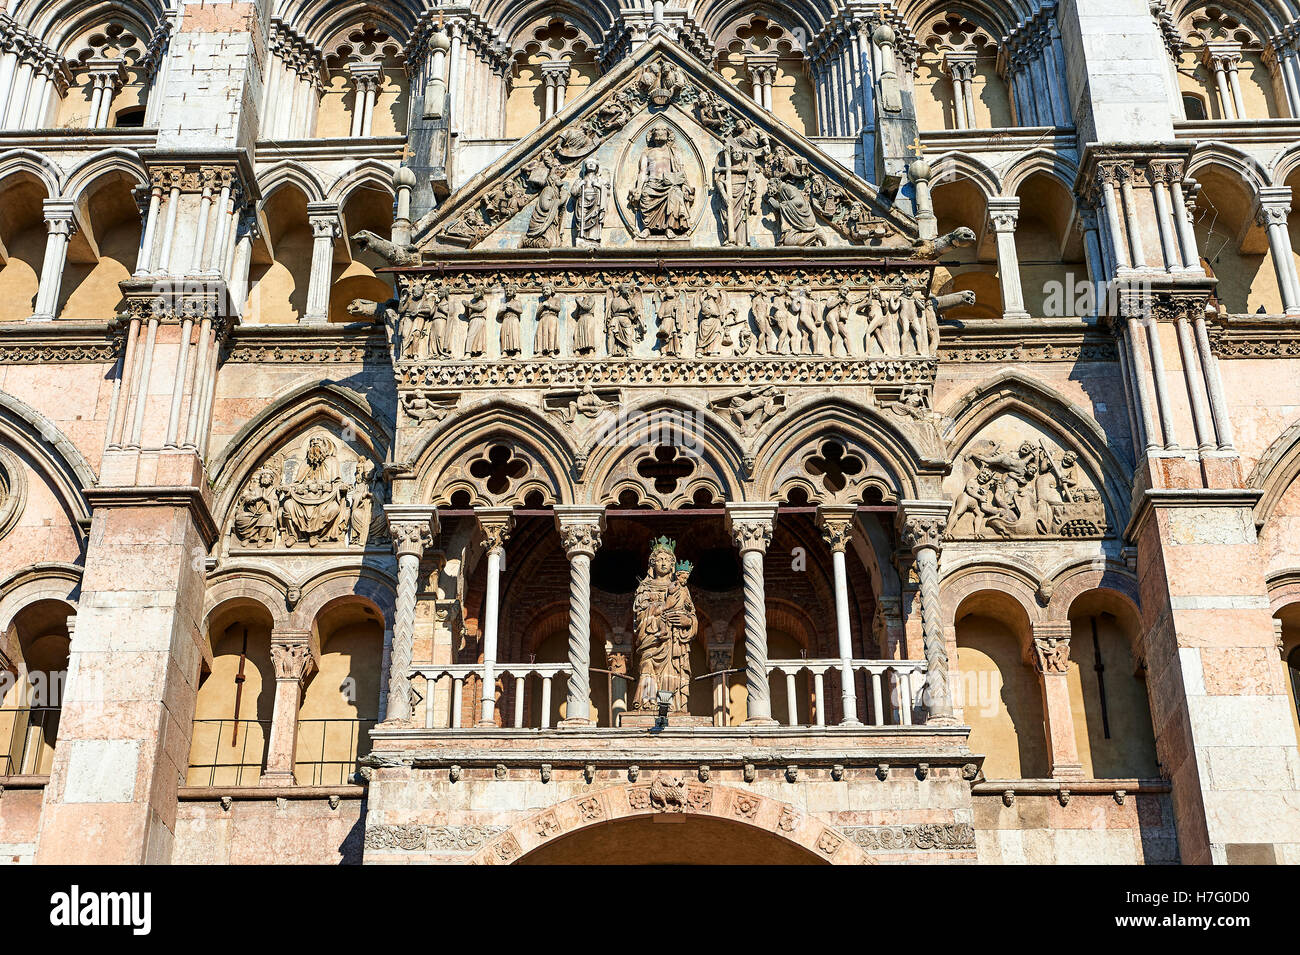 Sculptures et d'architecture gothique tardif des ajouts à la façade de la cathédrale romane du xiie siècle Ferrara, Italie Banque D'Images